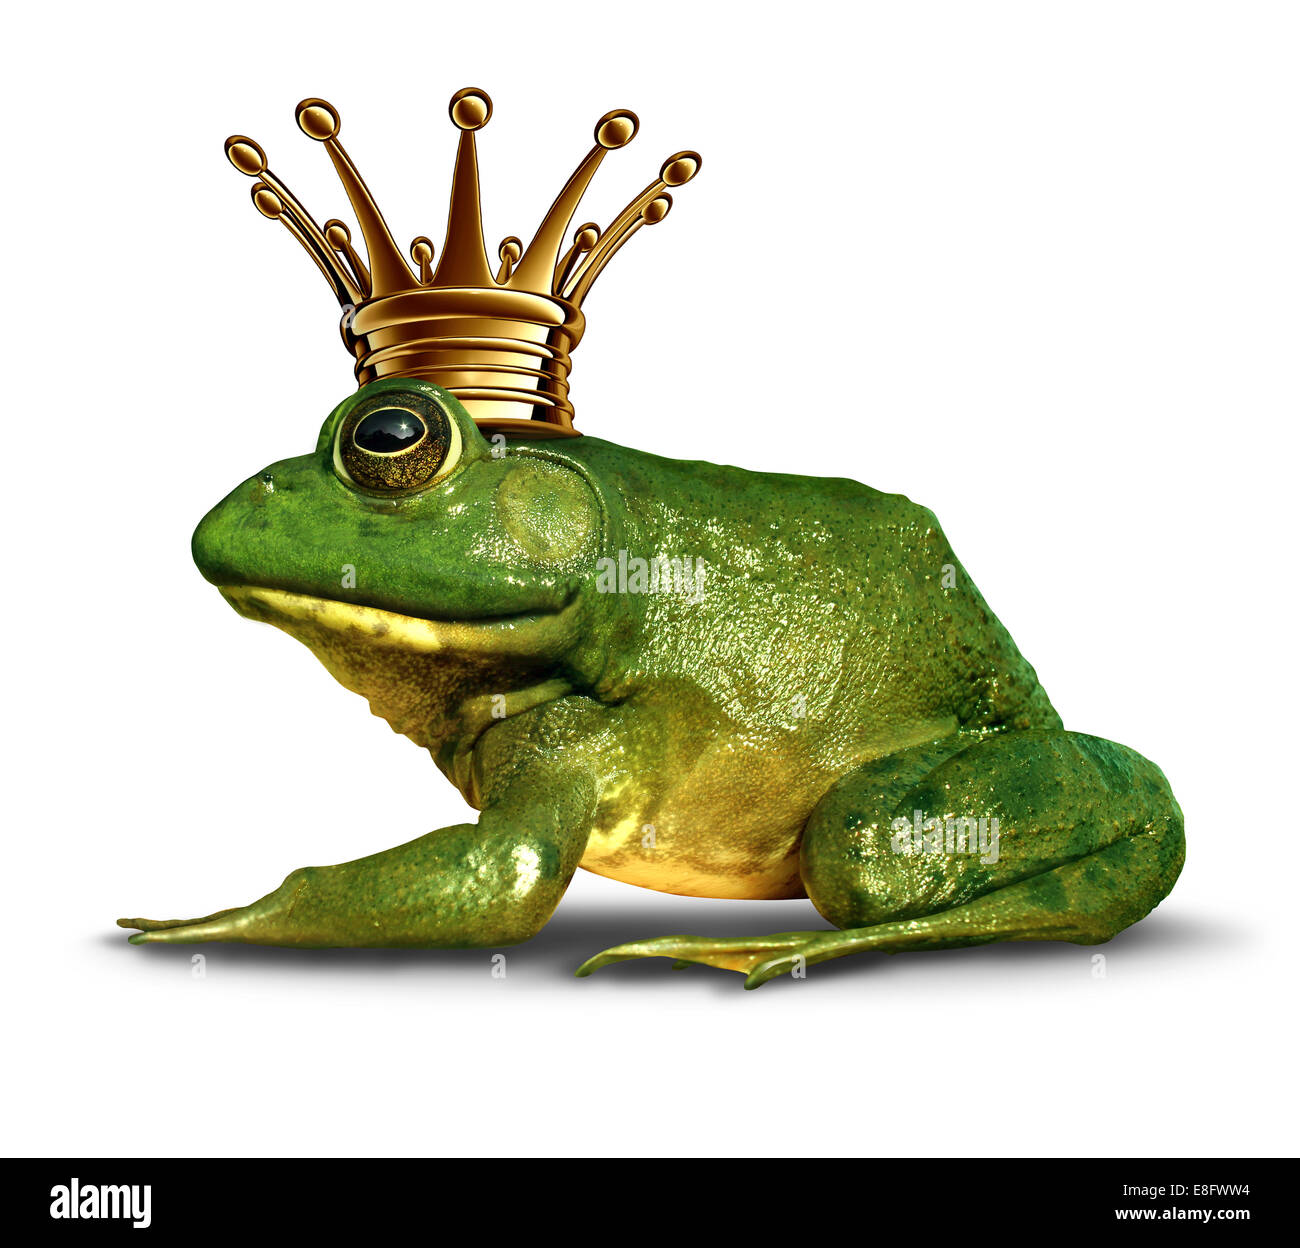 Le prince grenouille vue latérale concept avec couronne d'or représentant le symbole de conte de fées du changement et de la transformation d'un amphibie Banque D'Images